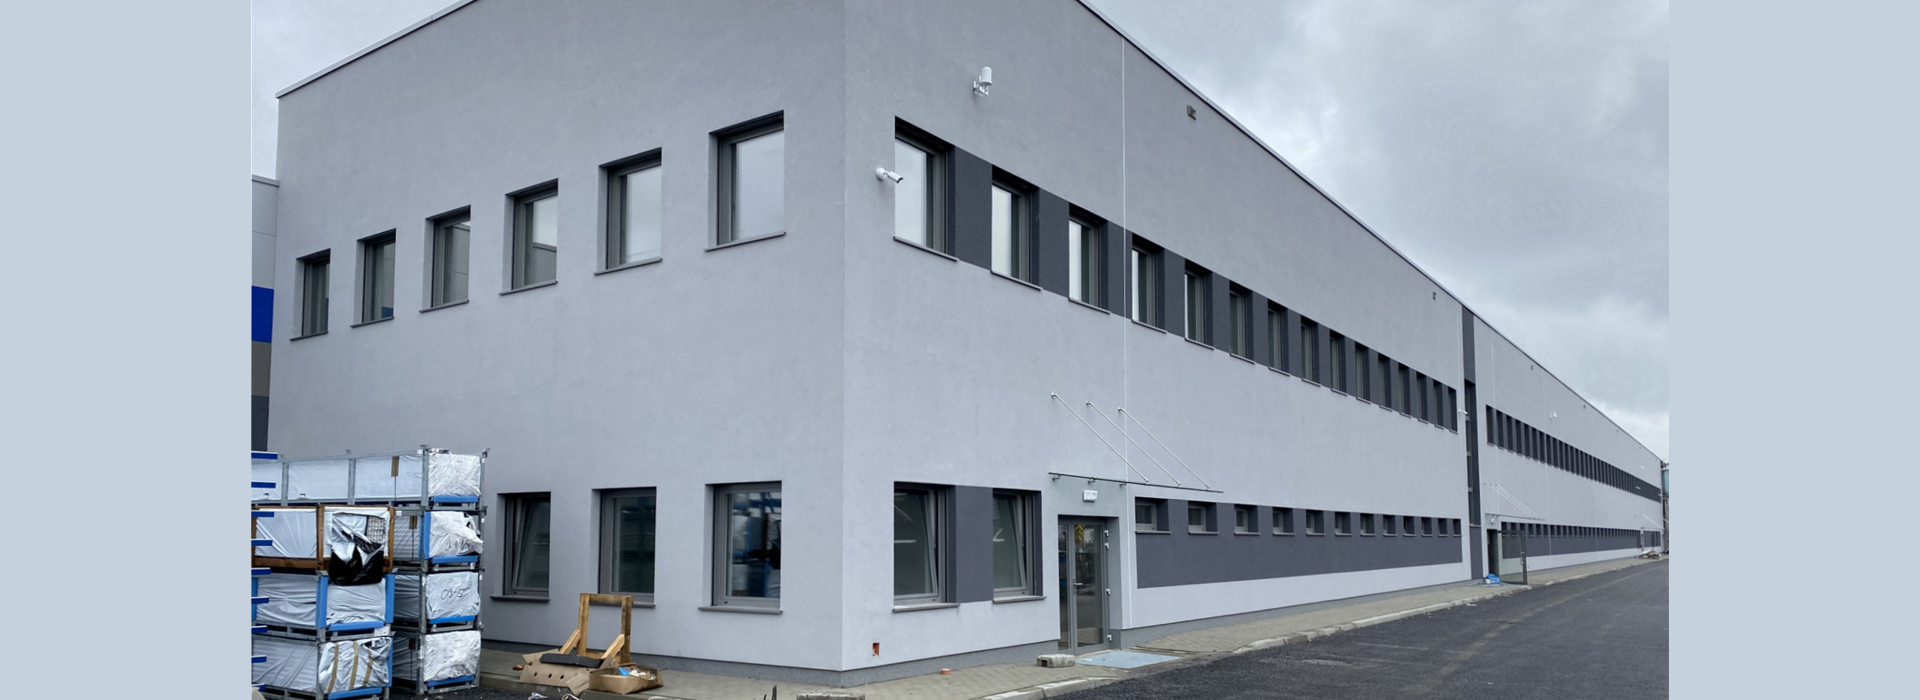 Wentylacja i klimatyzacja w fabryce stolarki okienno-drzwiowen EKO-OKNA S.A. w Kornicach